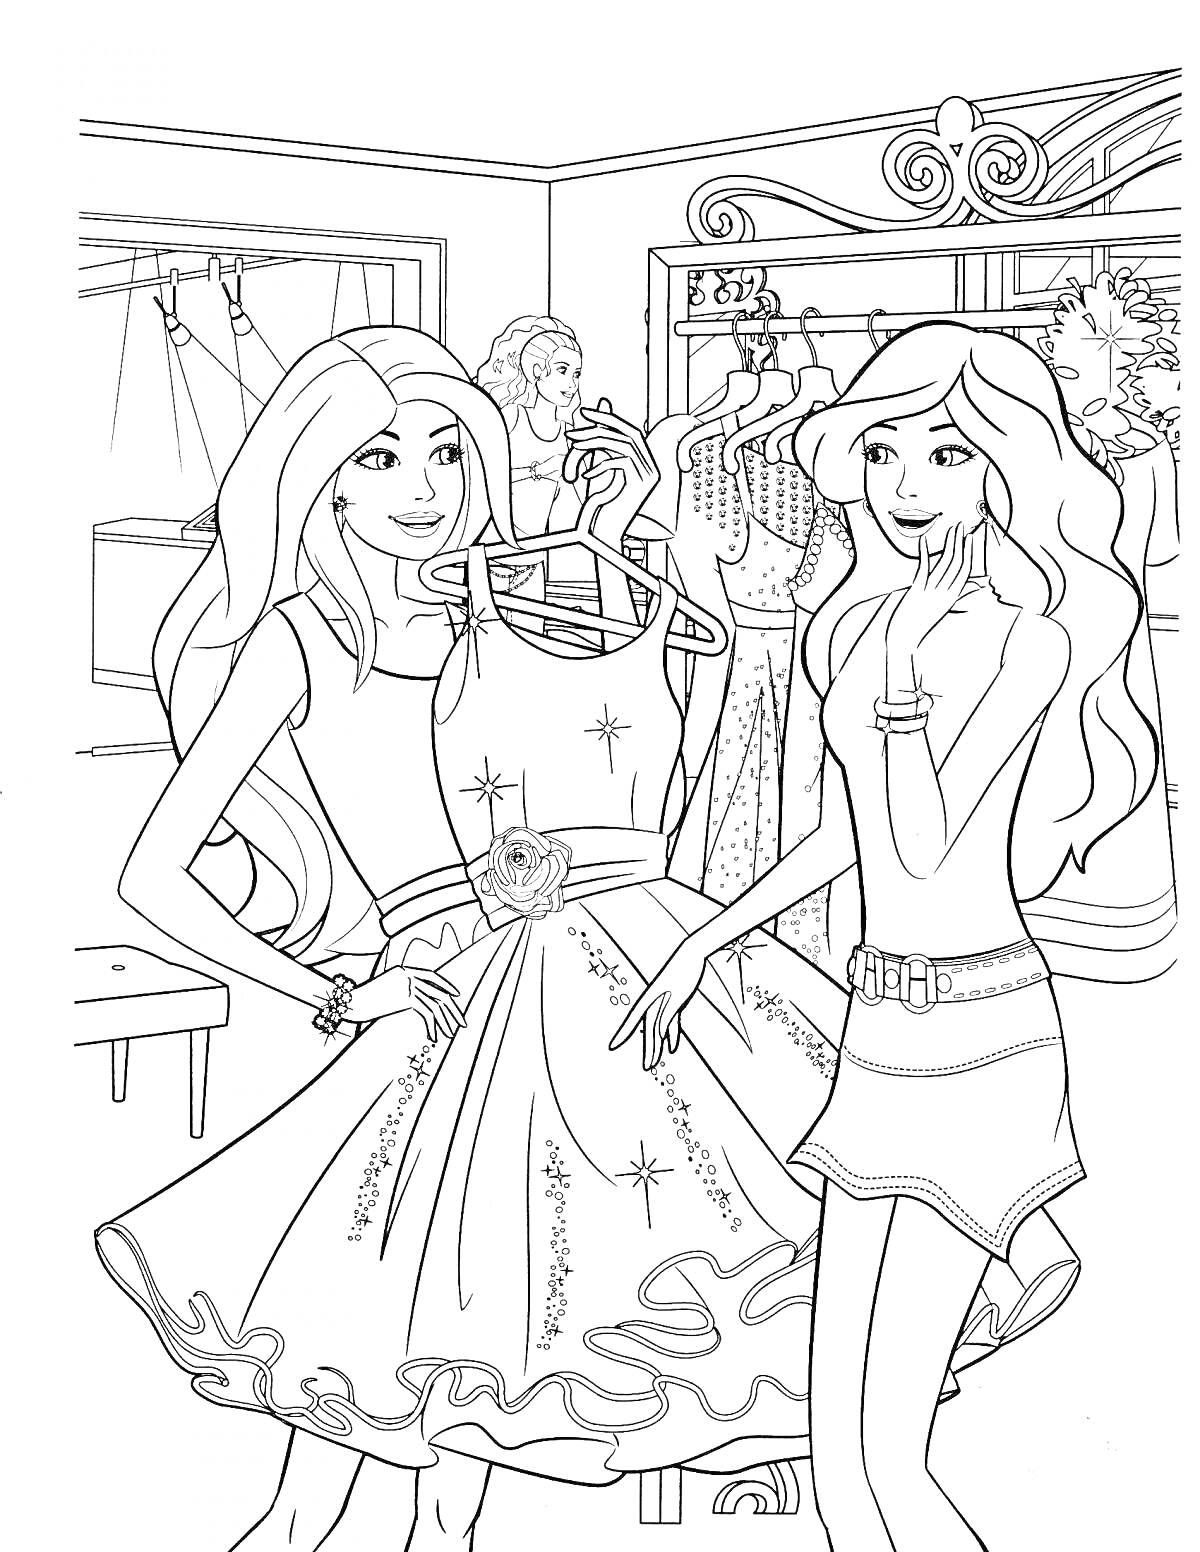 Барби с подругой выбирают платье в магазине, полки с одеждой и вешалки на заднем плане, стенд с платьями